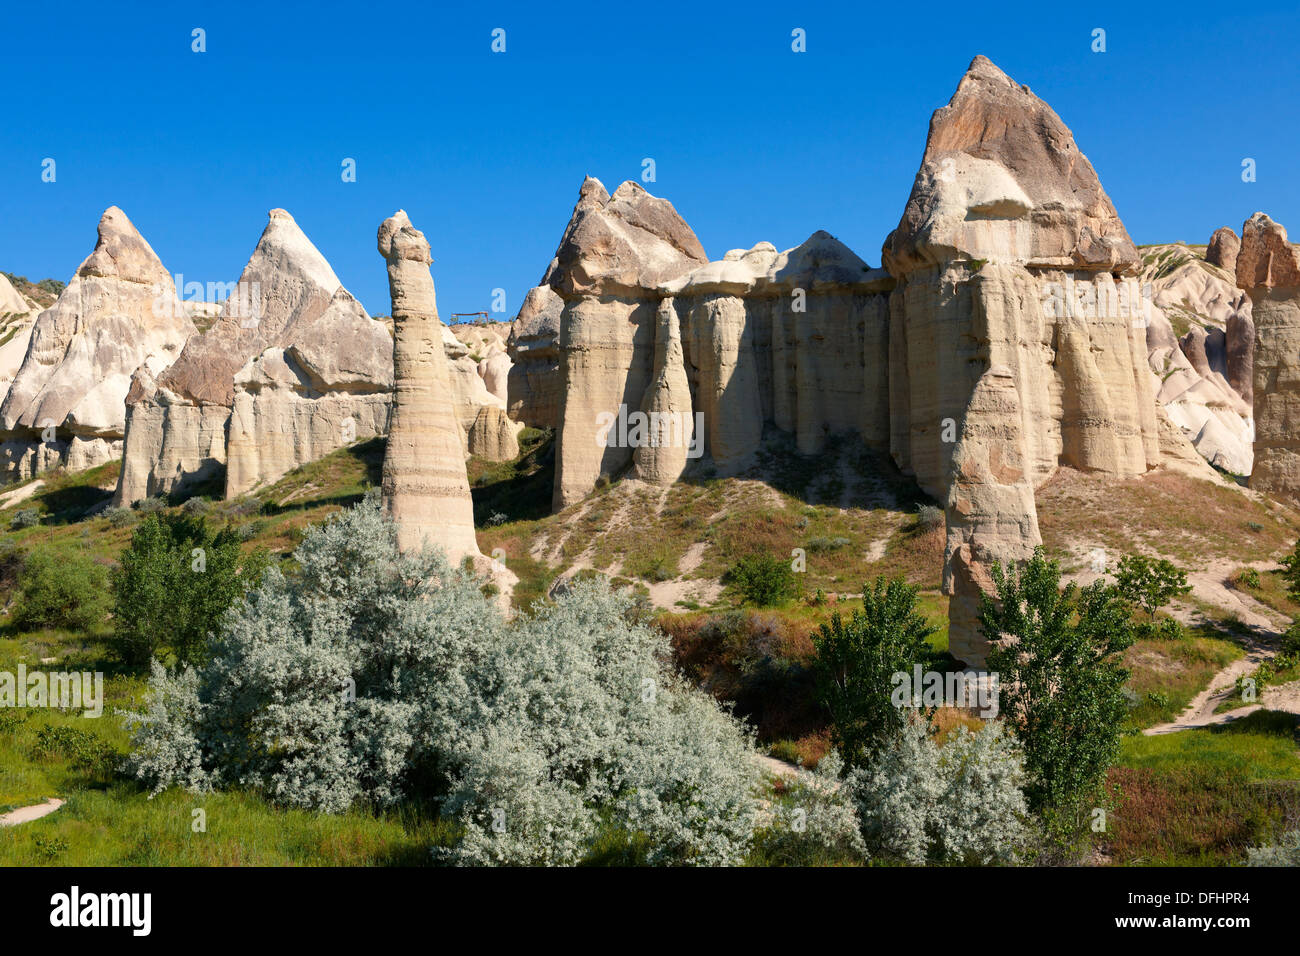 The Fairy Chimneys of Love Valley - Cappadocia Turkey Stock Photo